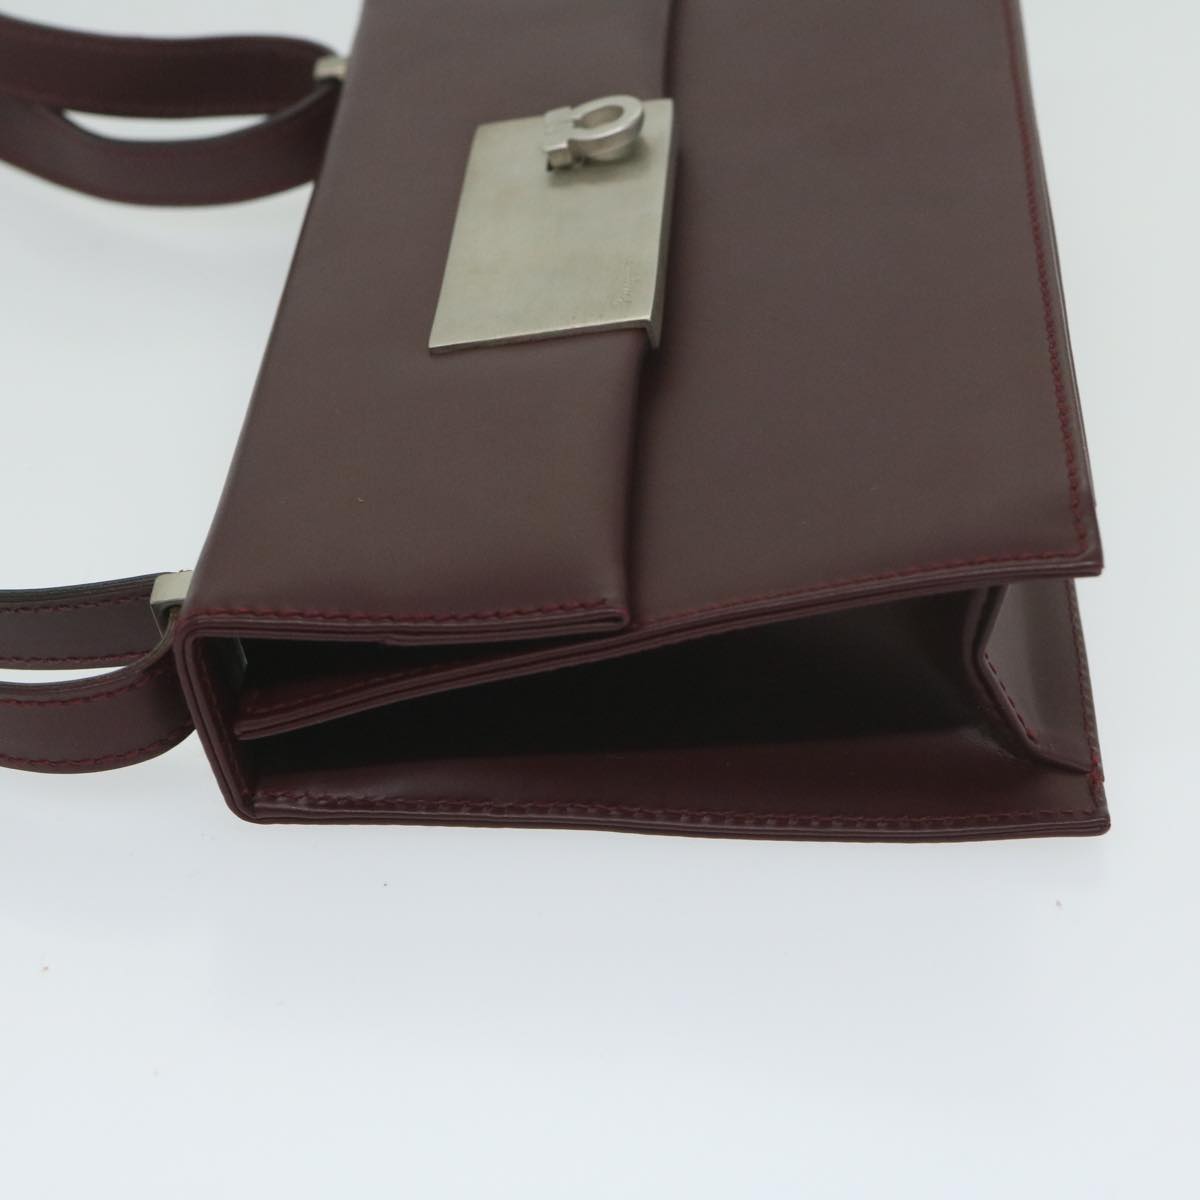 Salvatore Ferragamo Gancini Shoulder Bag Leather Bordeaux Auth 63551